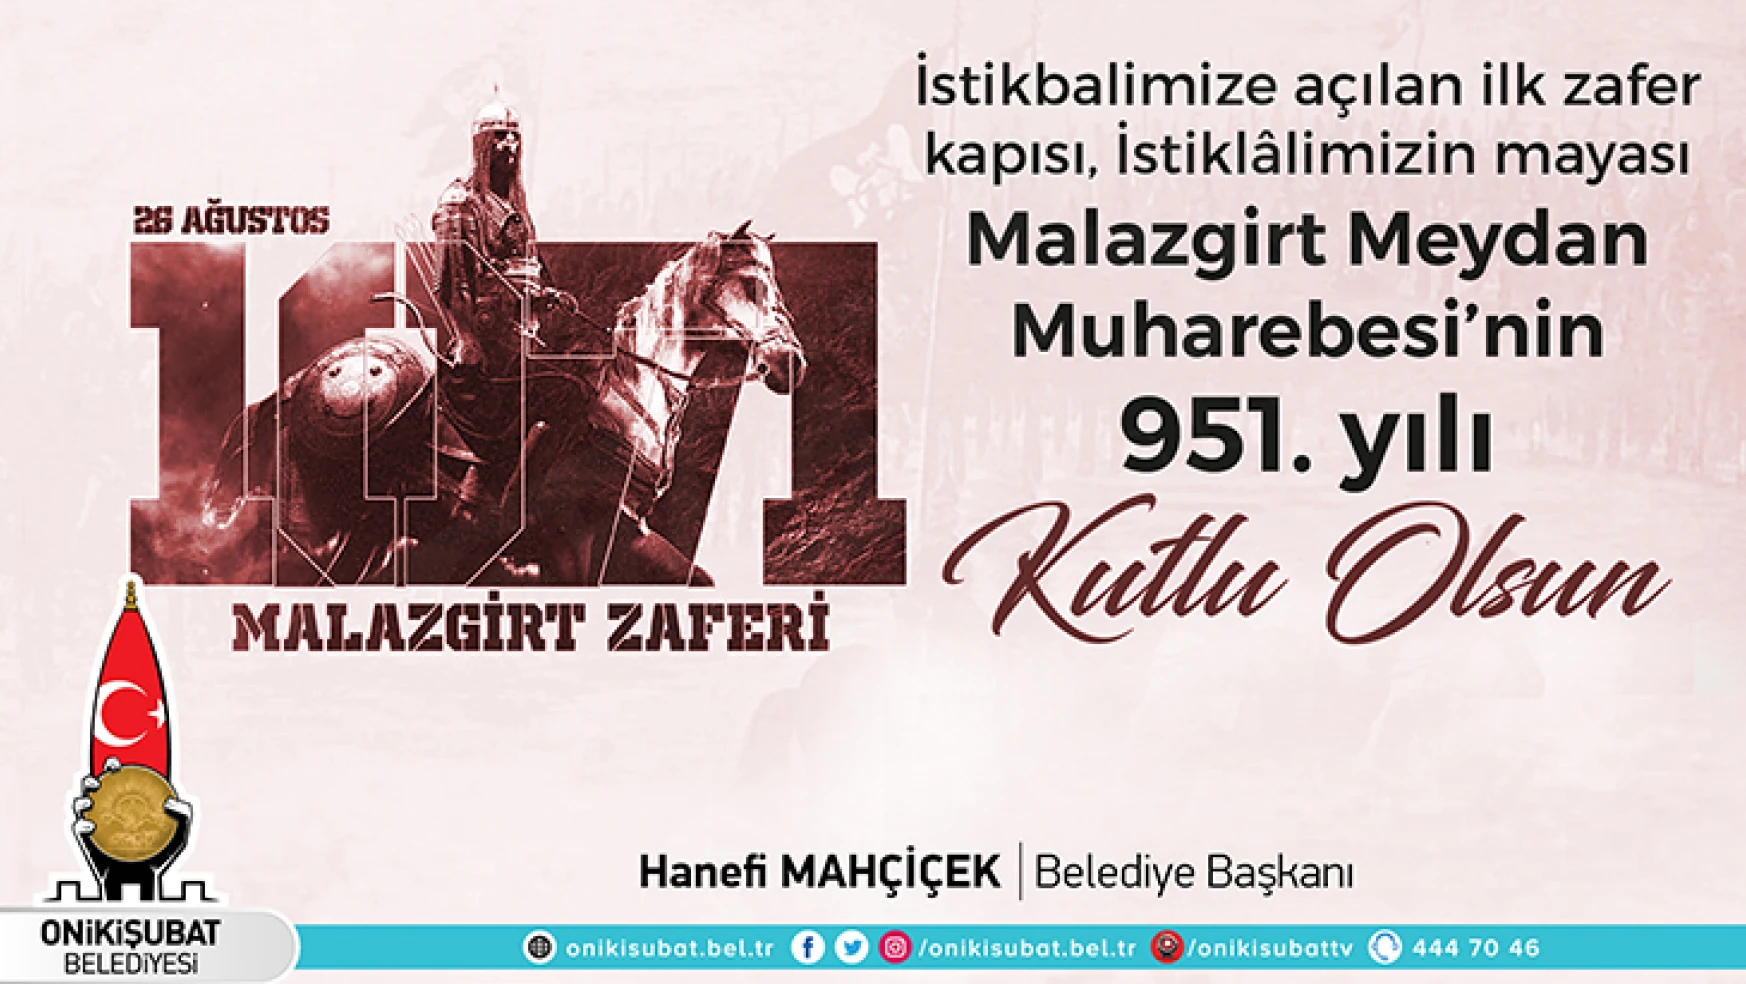 Başkan Mahçiçek'ten Malazgirt Zaferi'nin 951'inci yıl dönümü mesajı